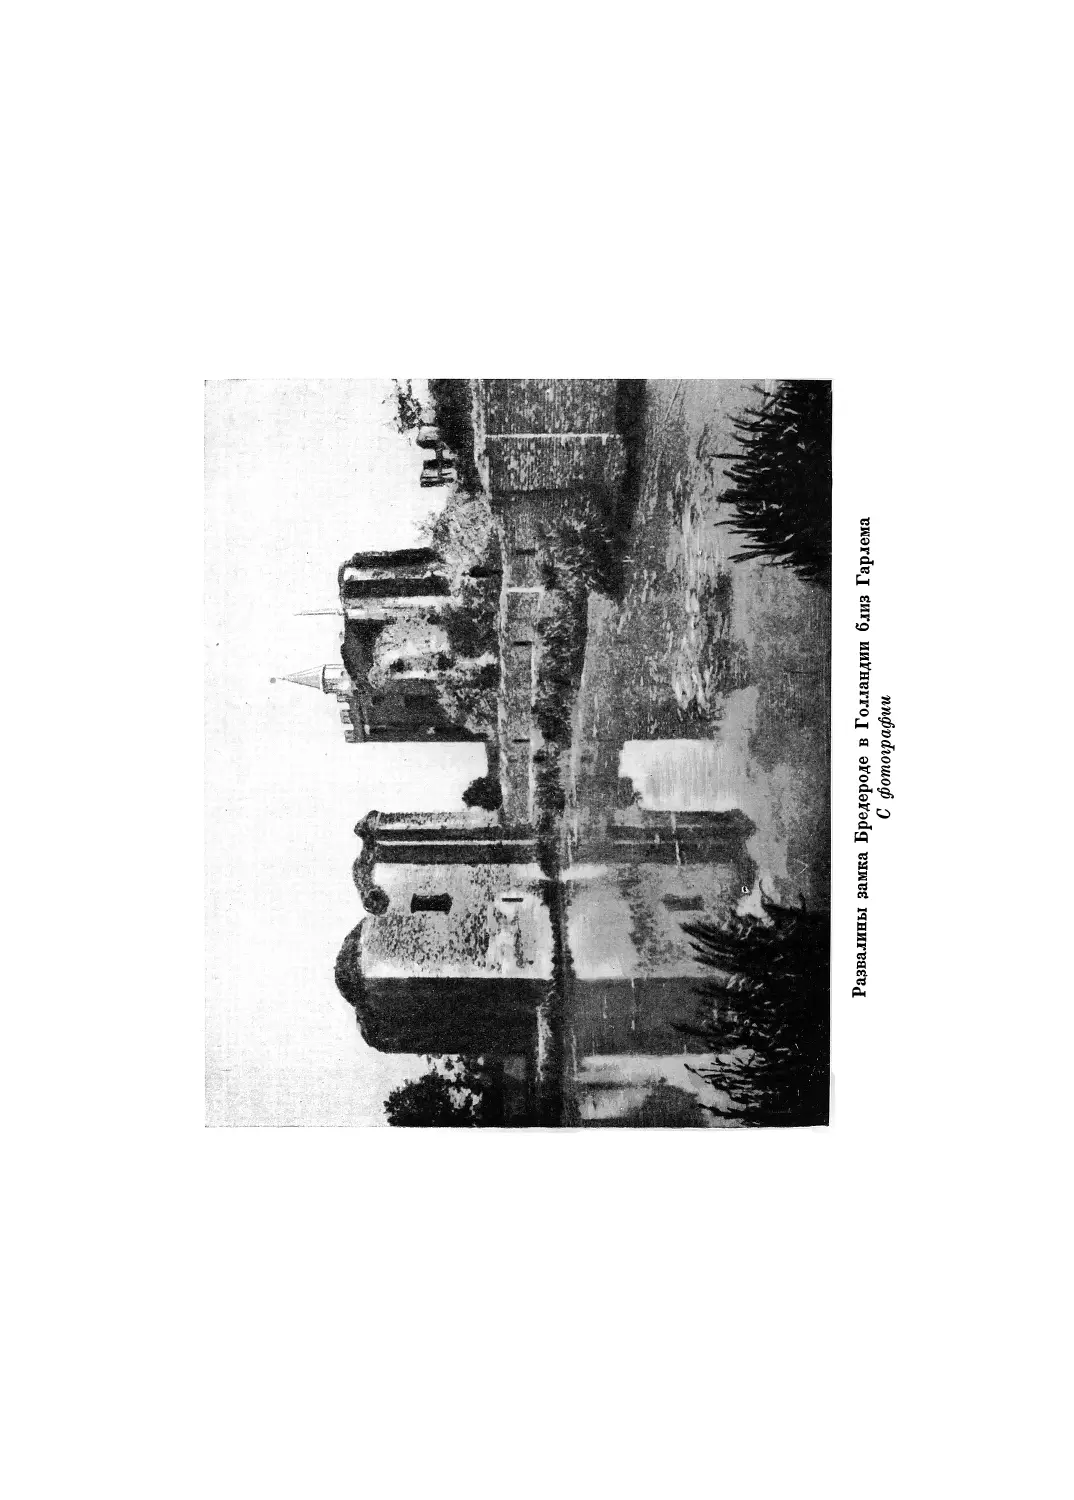 Вклейка. Развалины замка Бредероде в Голландии, близ Гарлема. — С Фотографии